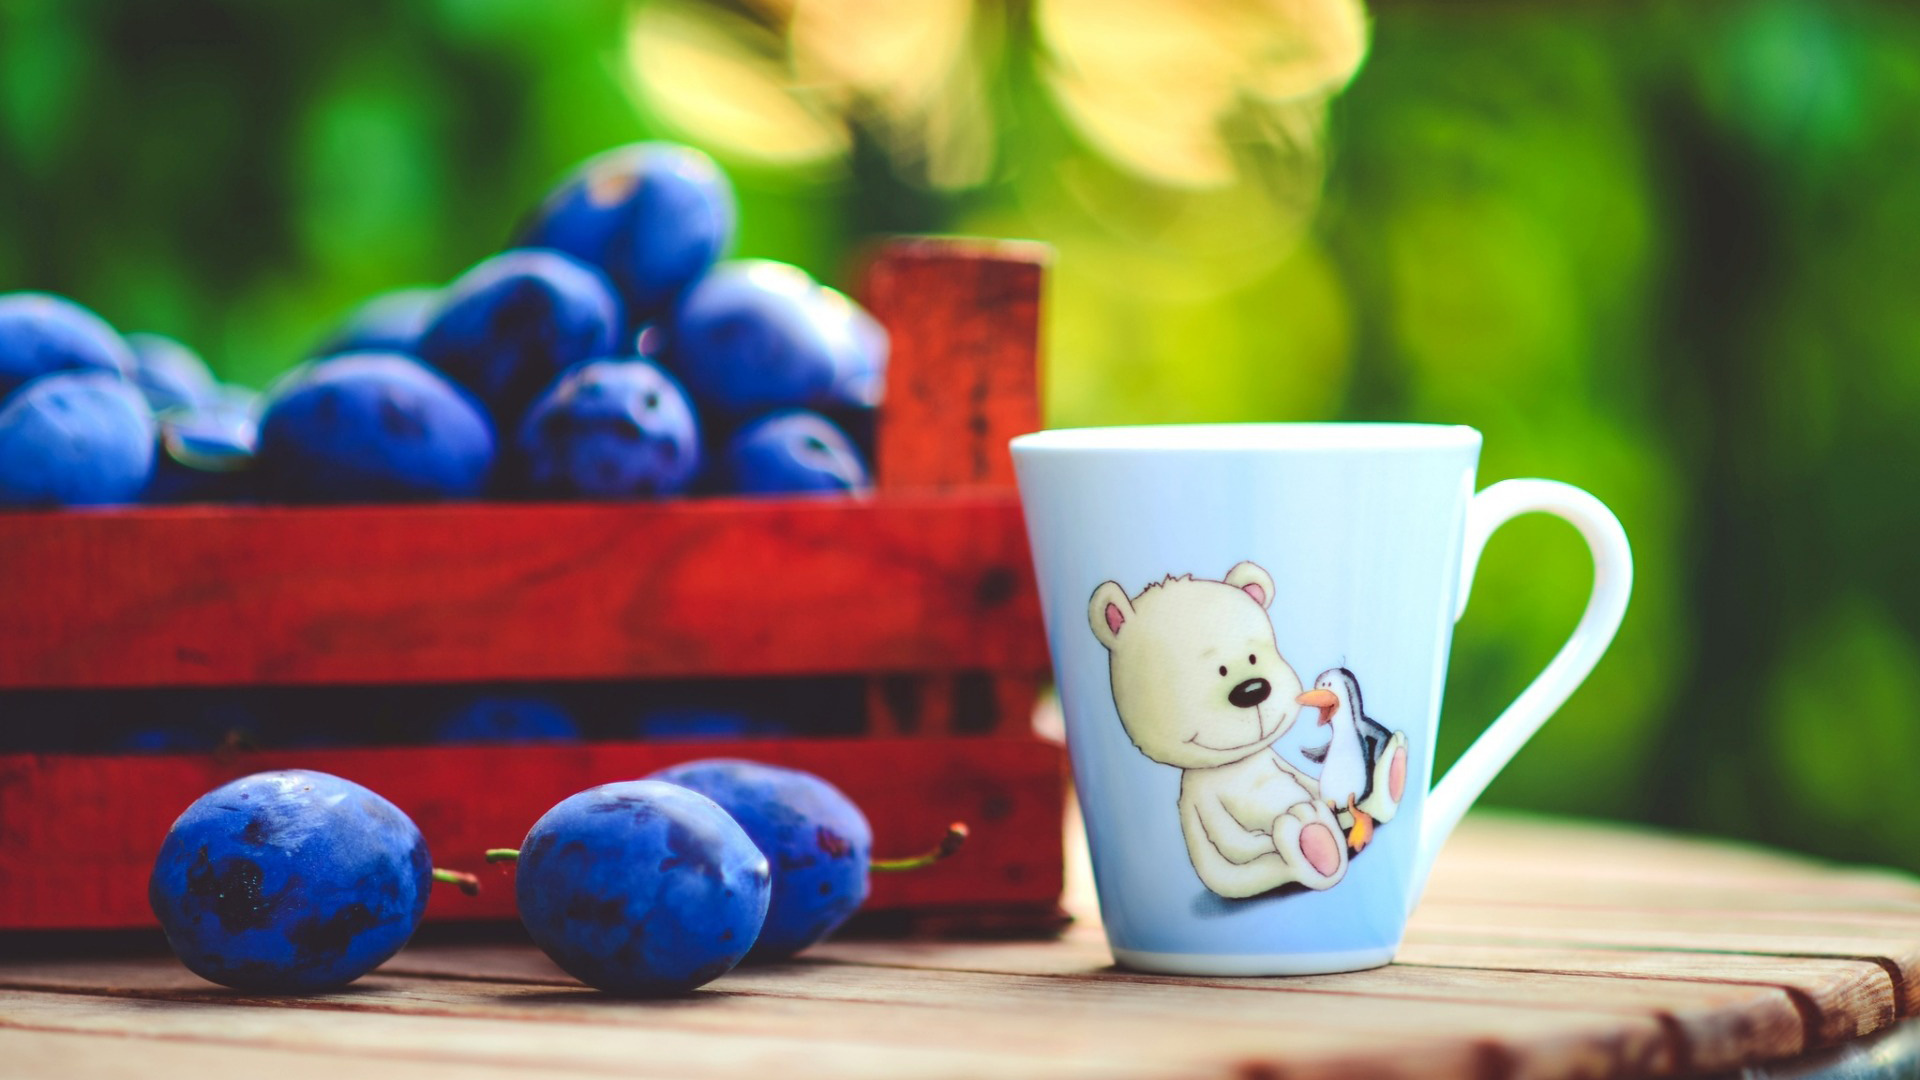 蓝莓,杯,绘图,熊,可爱,绿色背景,桌面壁纸